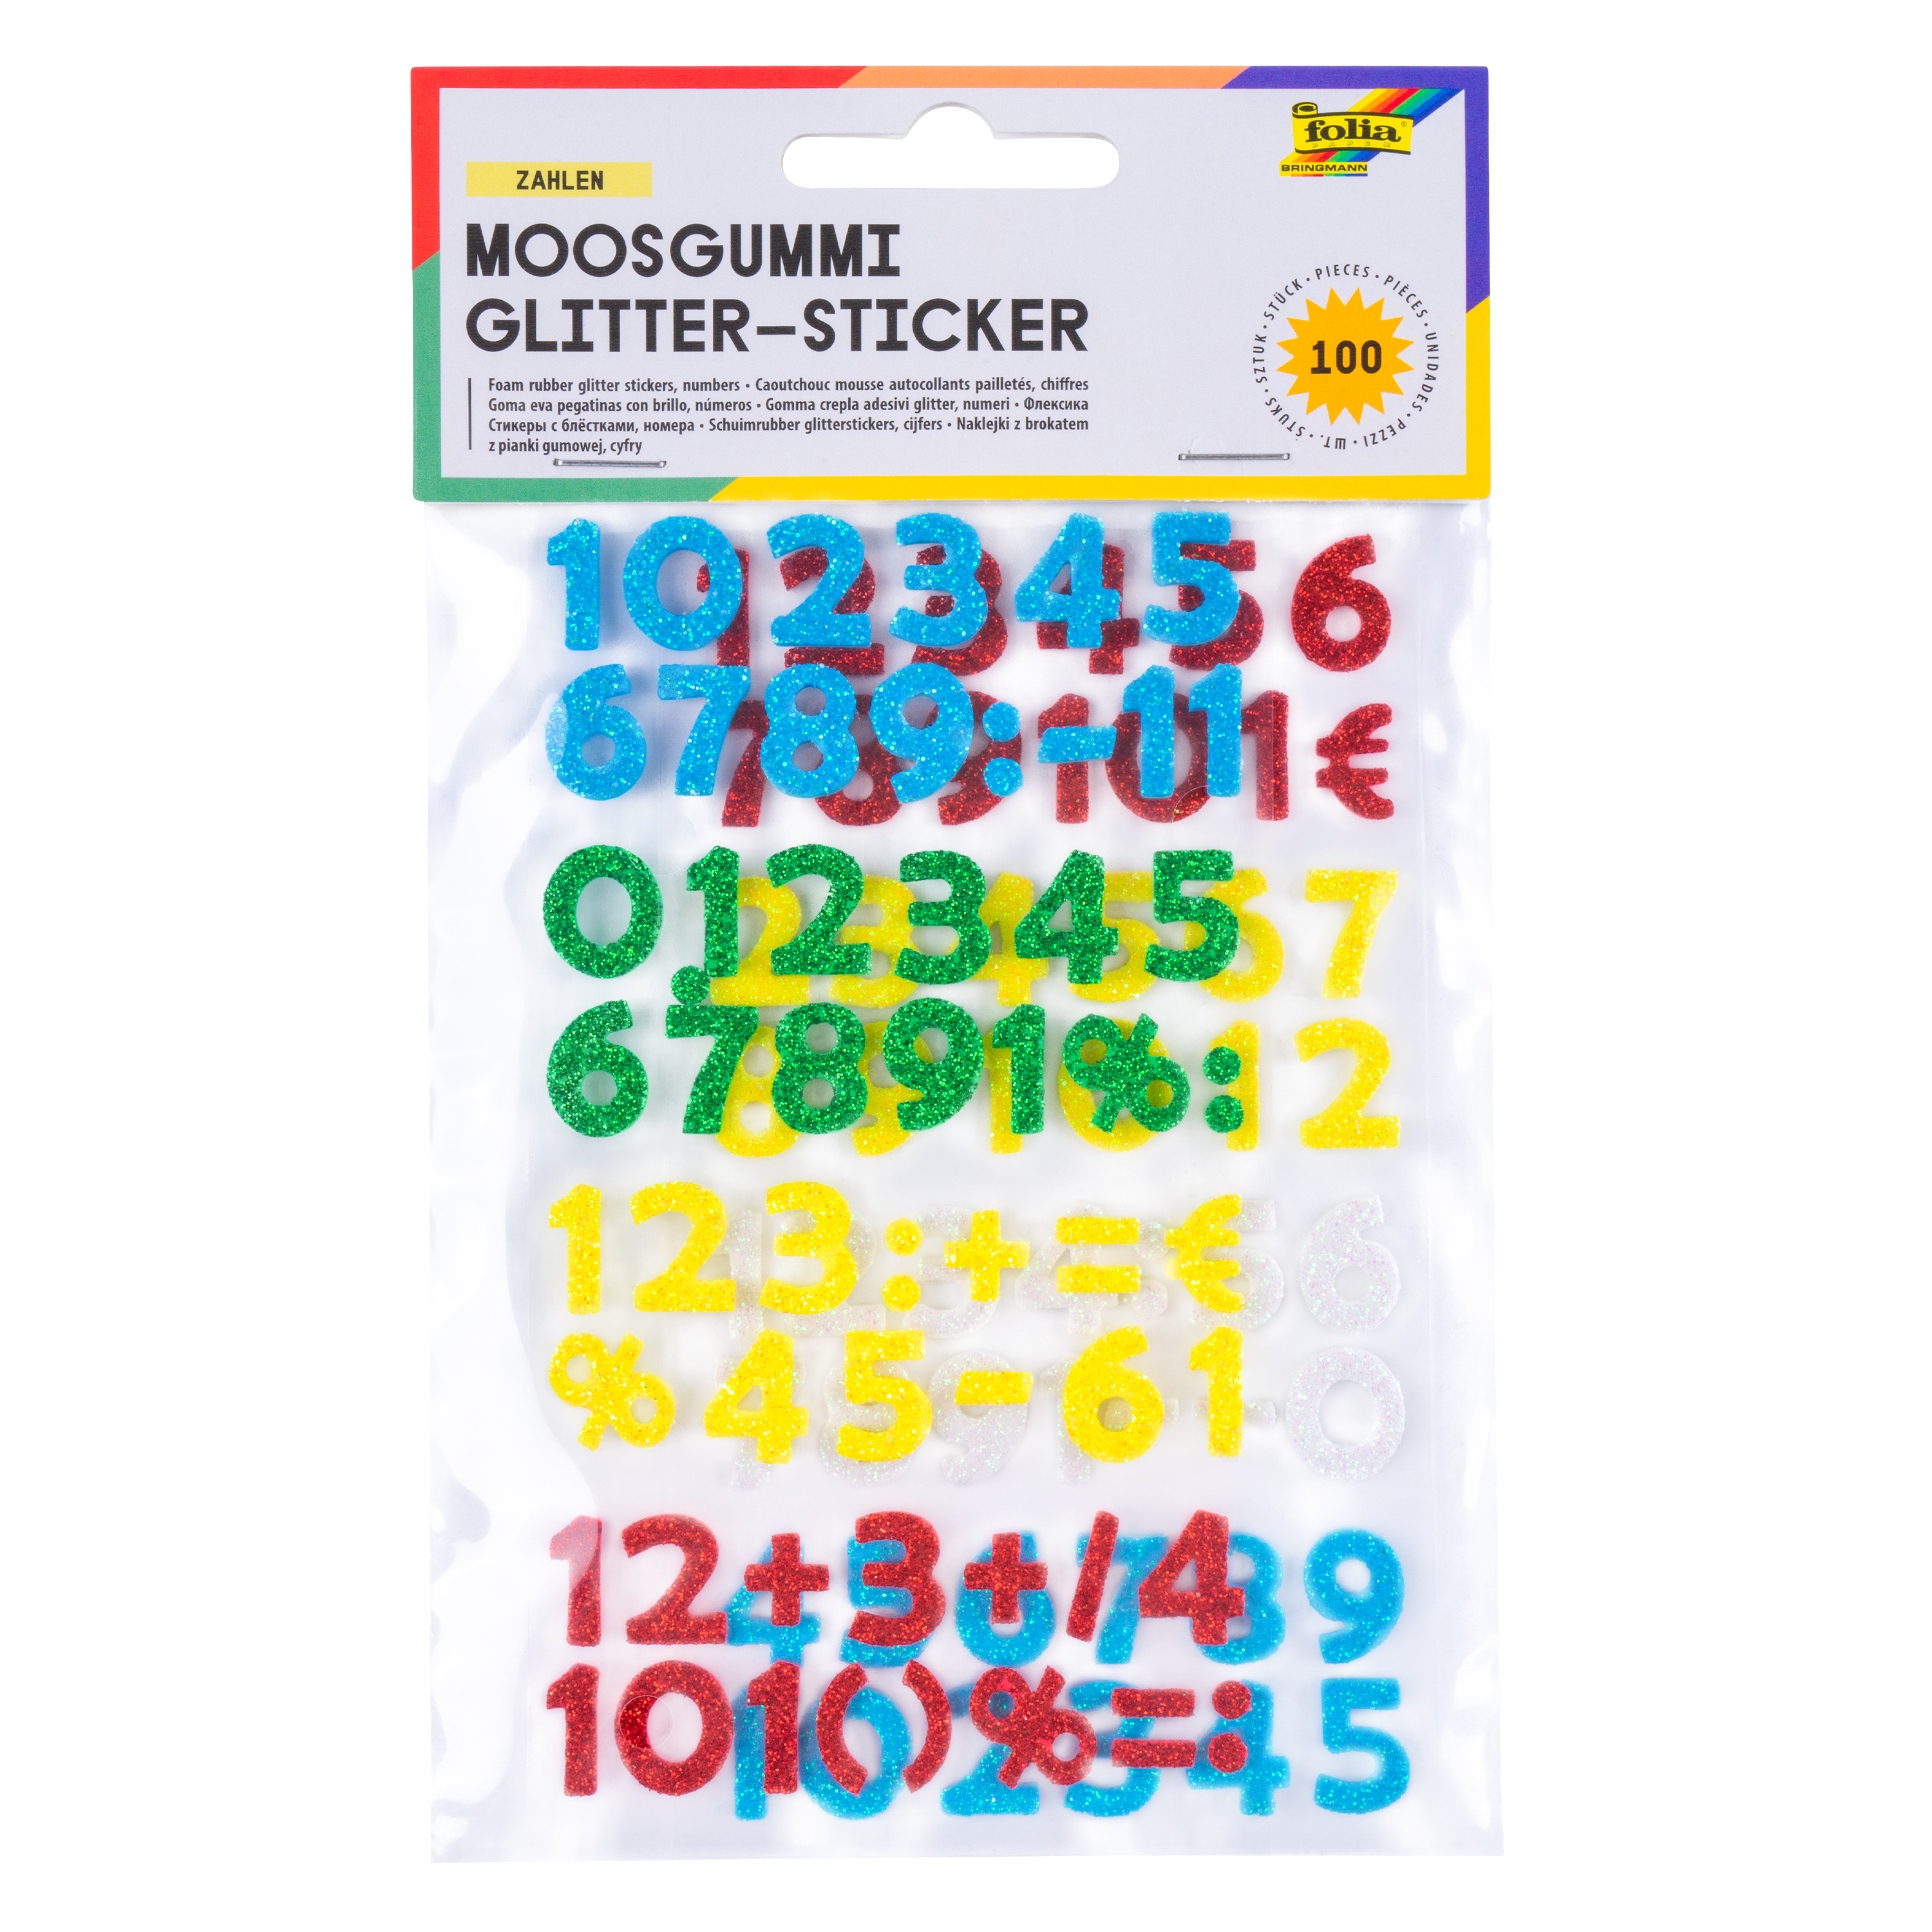 Moosgummi Glitter-Sticker 'Zahlen', 100 Stück